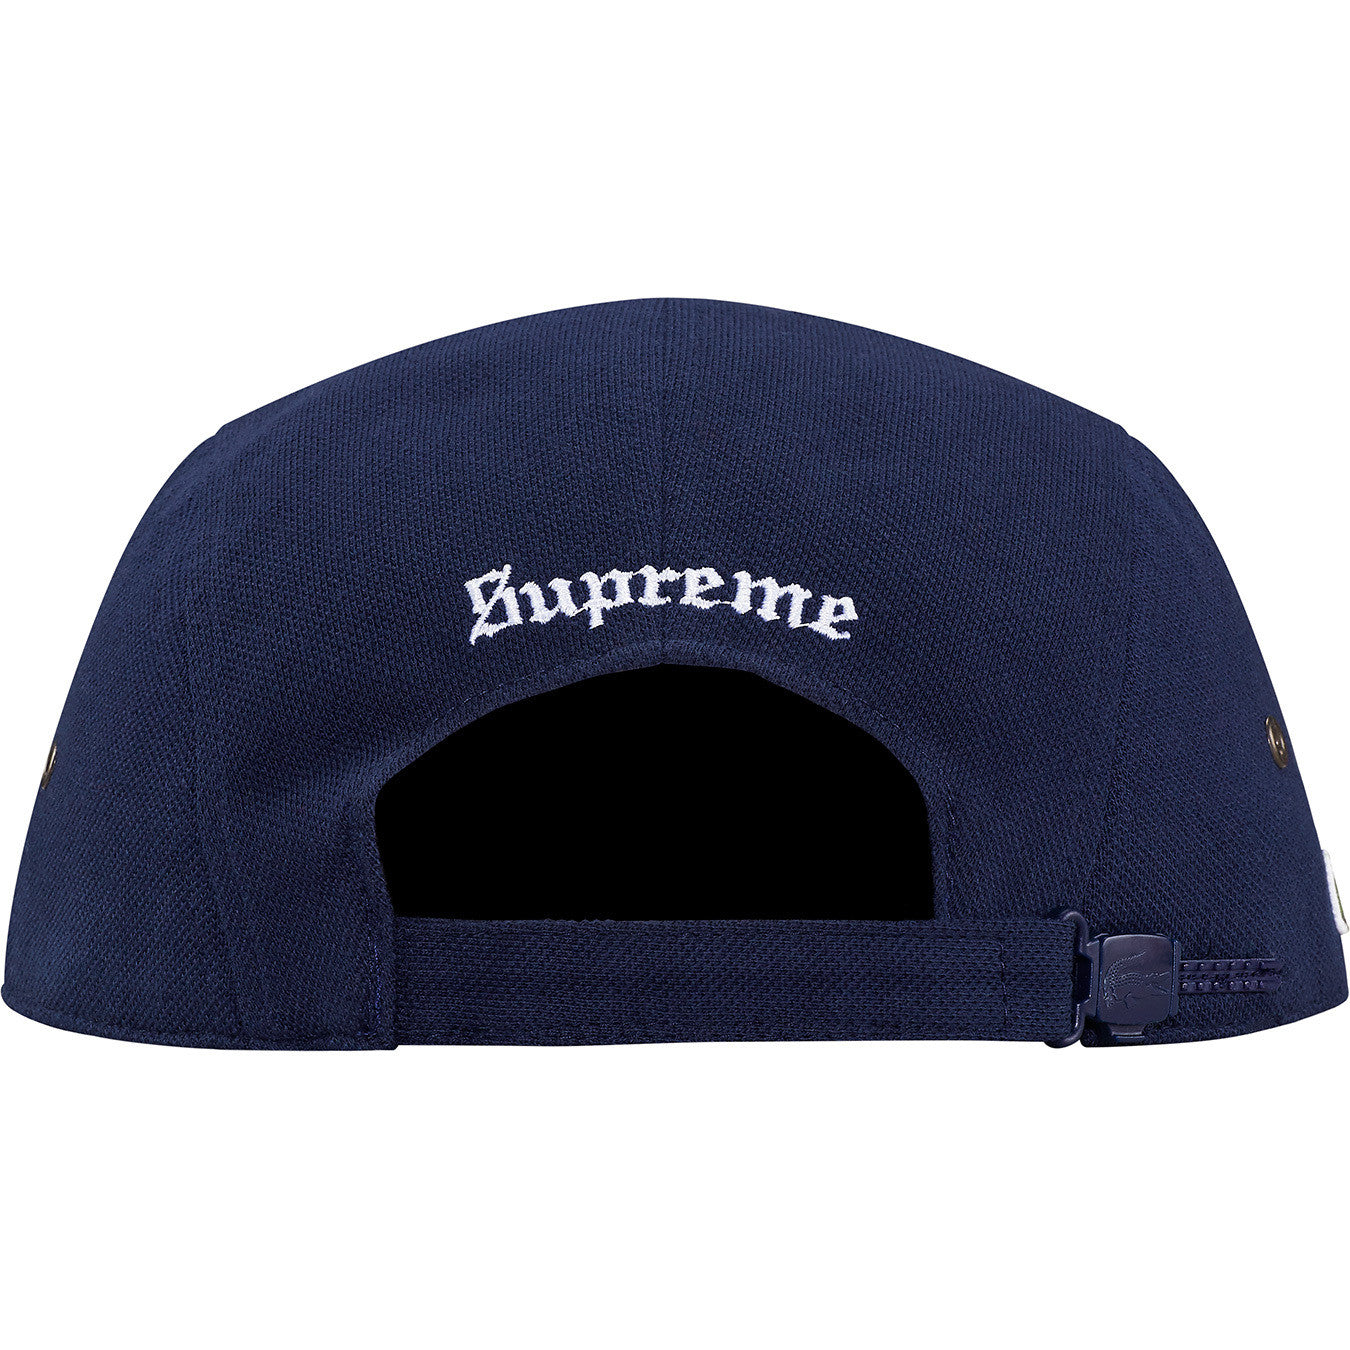 Supreme¬Æ/LACOSTE Pique Camp Cap